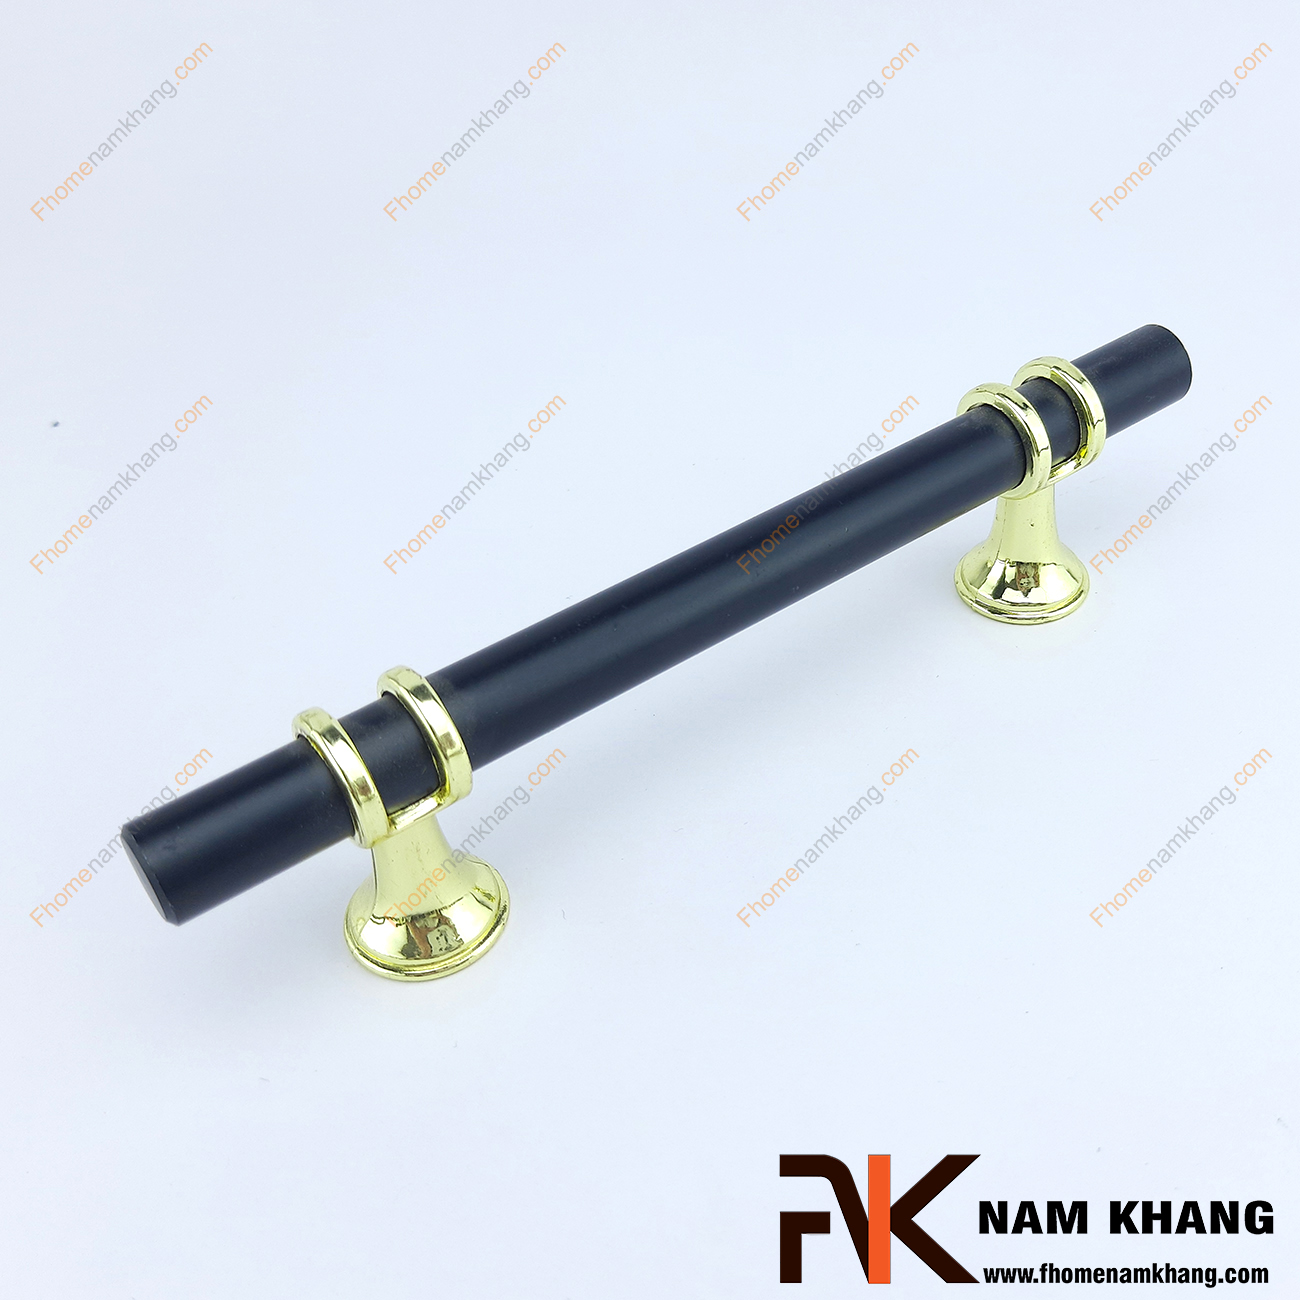 Sản phẩm Tay nắm tủ dạng thanh tròn màu đen NK207-D2, phối hợp 2 màu sắc chủ đạo đen và vàng bóng ở phần đế. NK207 thường được dùng trên các dạng tủ gỗ với nhiều vân màu gỗ để tạo sự khác biệt nổi bật.